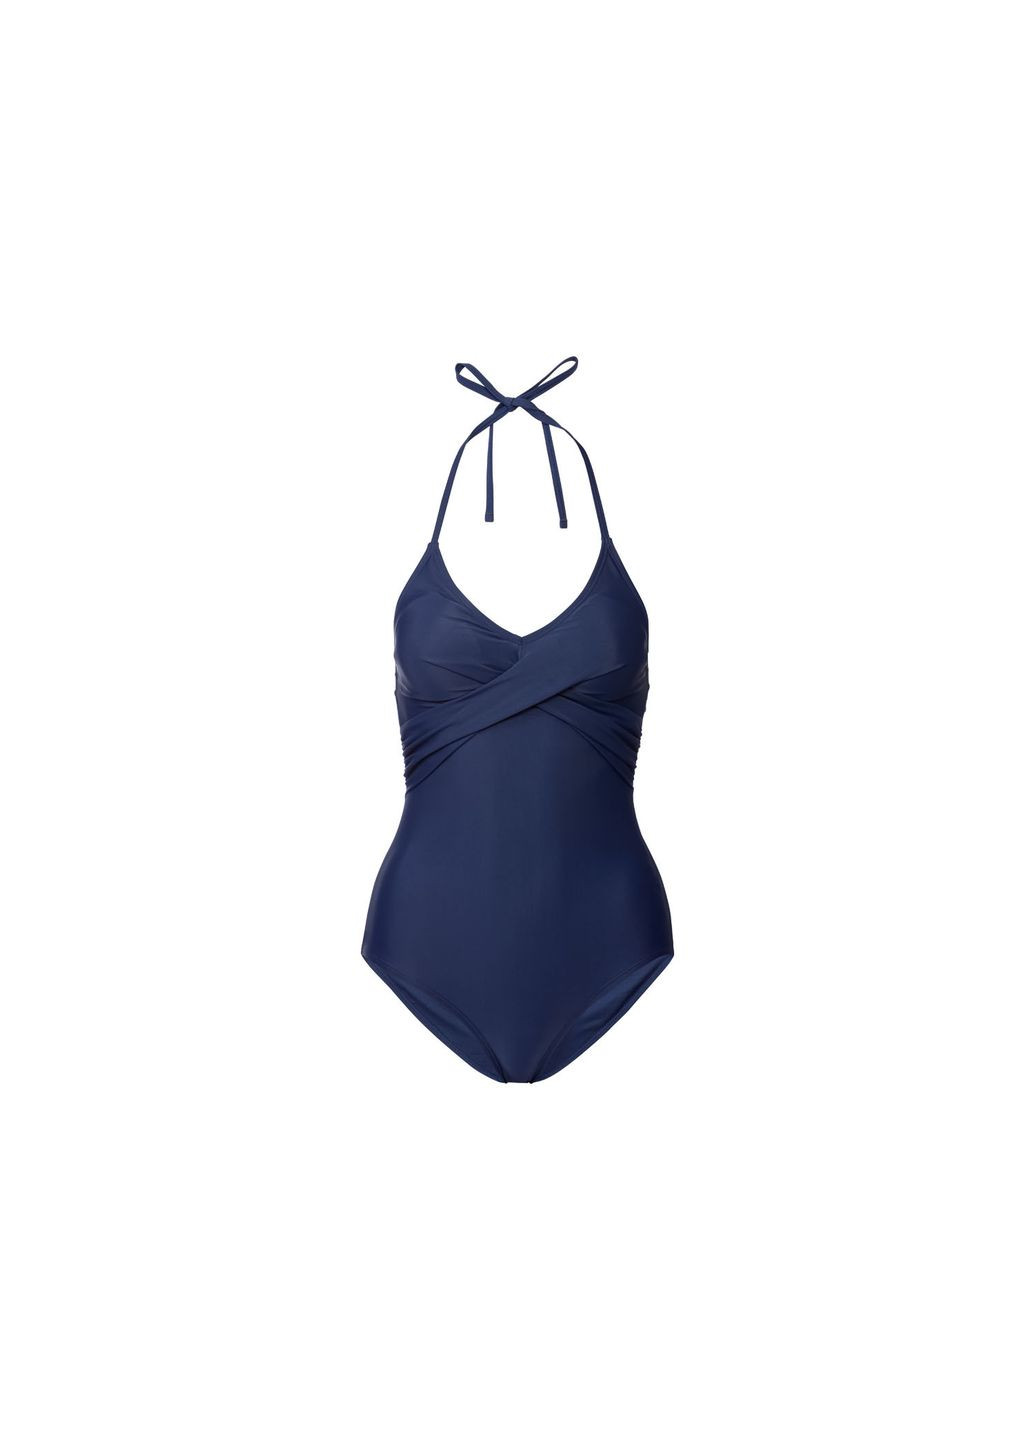 Темно-синий купальник слитный на подкладке для женщины lycra® 372115 38(s) бикини Esmara С открытой спиной, С открытыми плечами